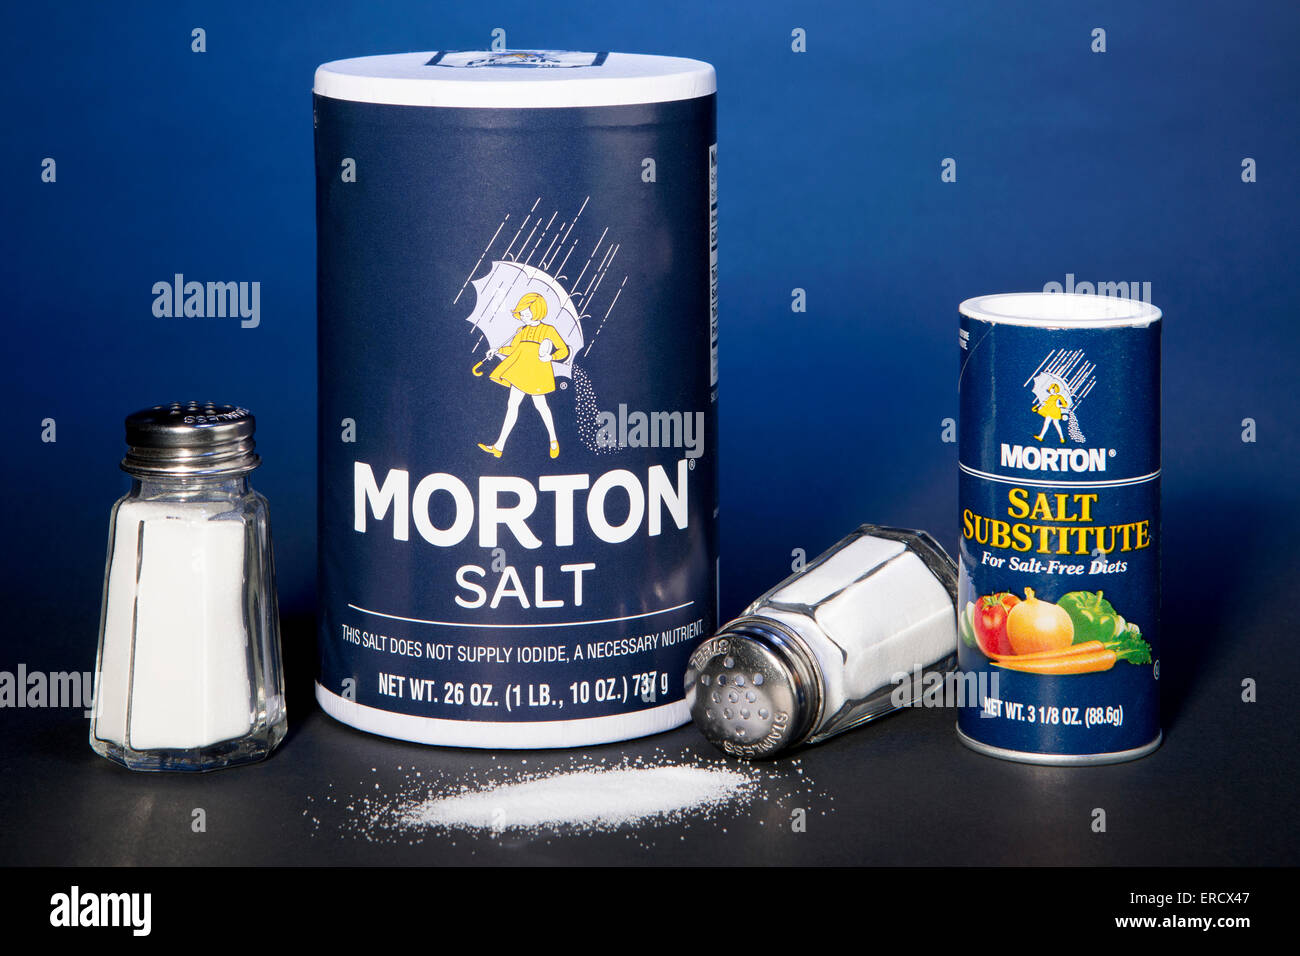 Morton Salt contenedor junto a un contenedor de Morton Salt sustituto (hecha con cloruro de potasio) Foto de stock